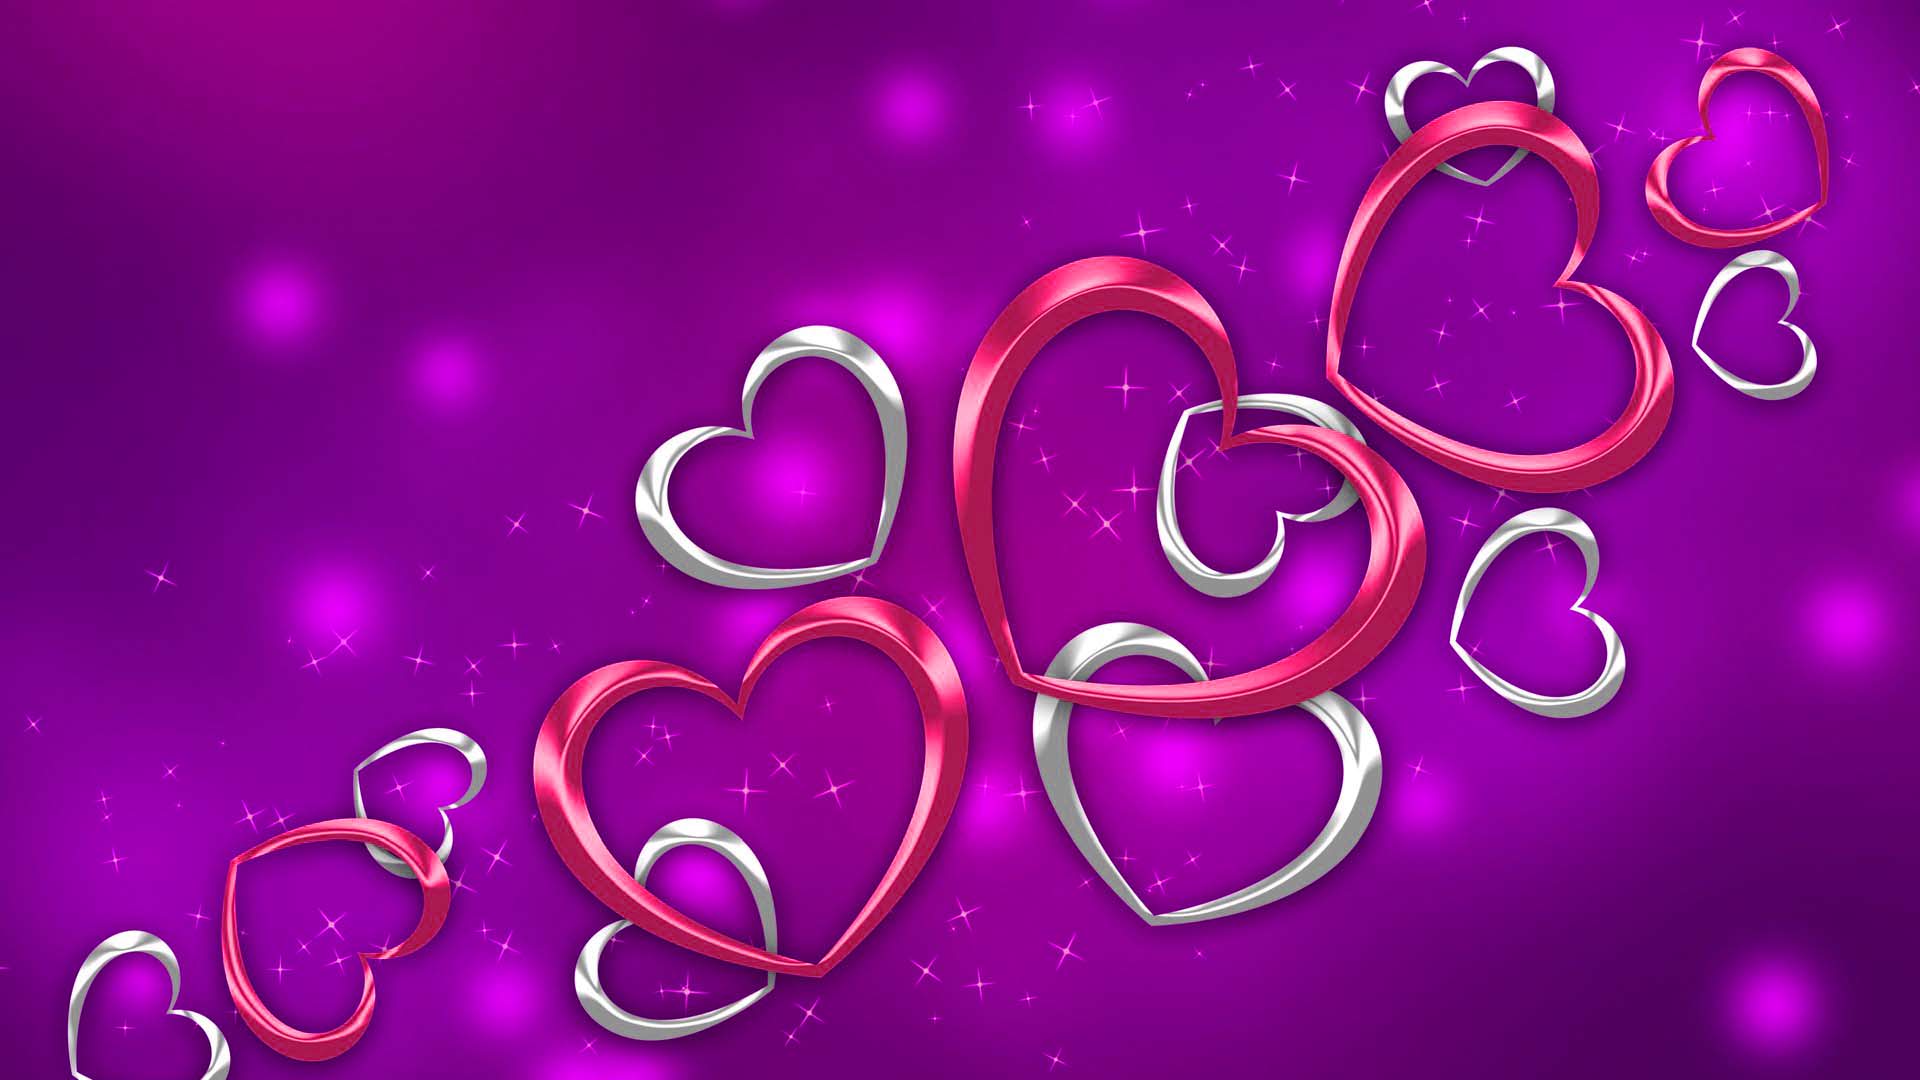 Purple Valentine's Day Wallpaper Free Purple Valentine's Day Background